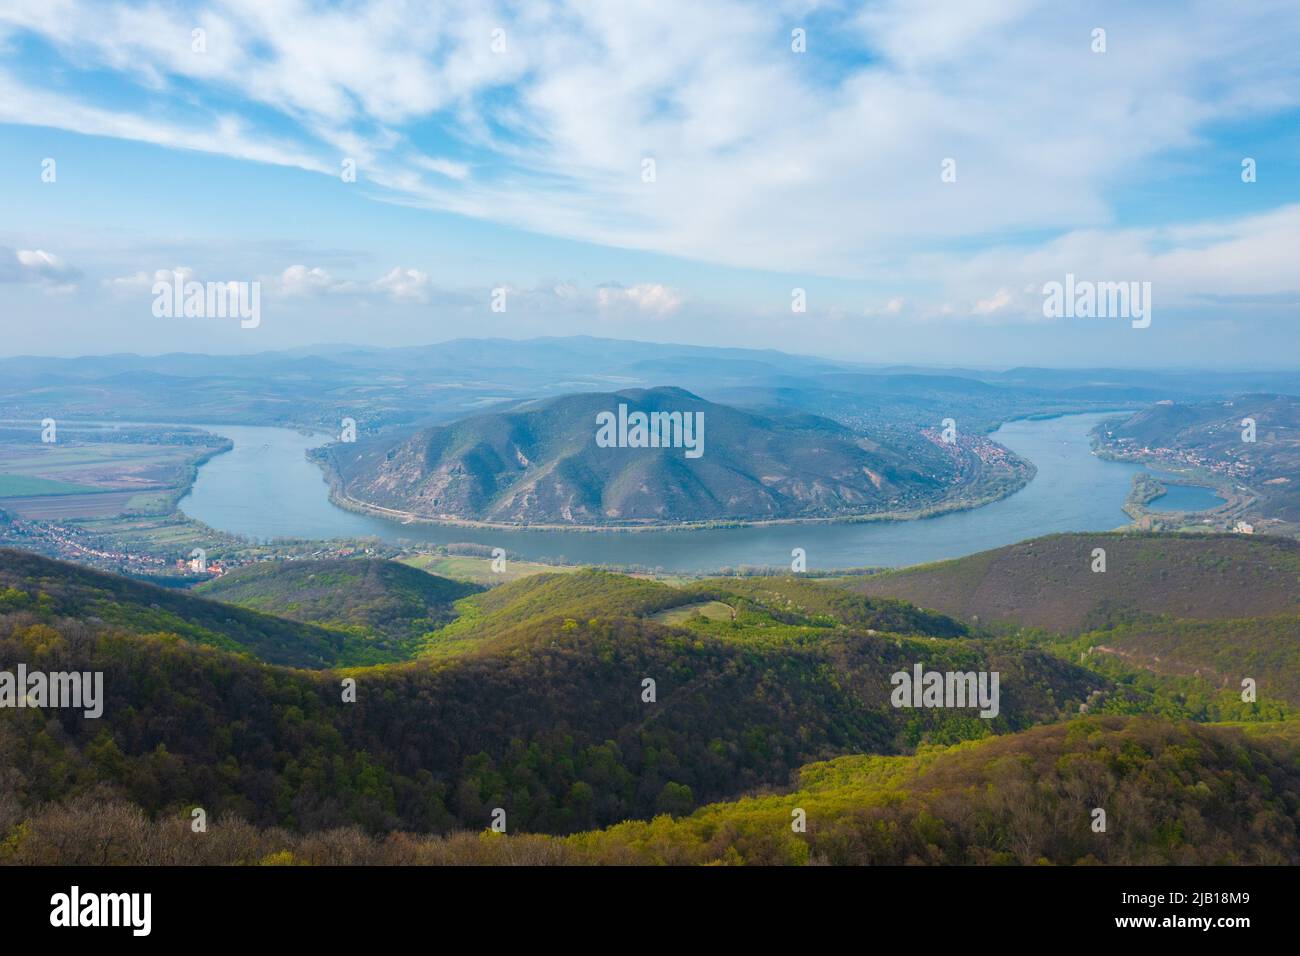 Spektakuläre Aussicht auf die donauknie vom Aussichtspunkt Prédikálószék. Diese Region Ungarns ist touristisch sehr bedeutsam. Stockfoto